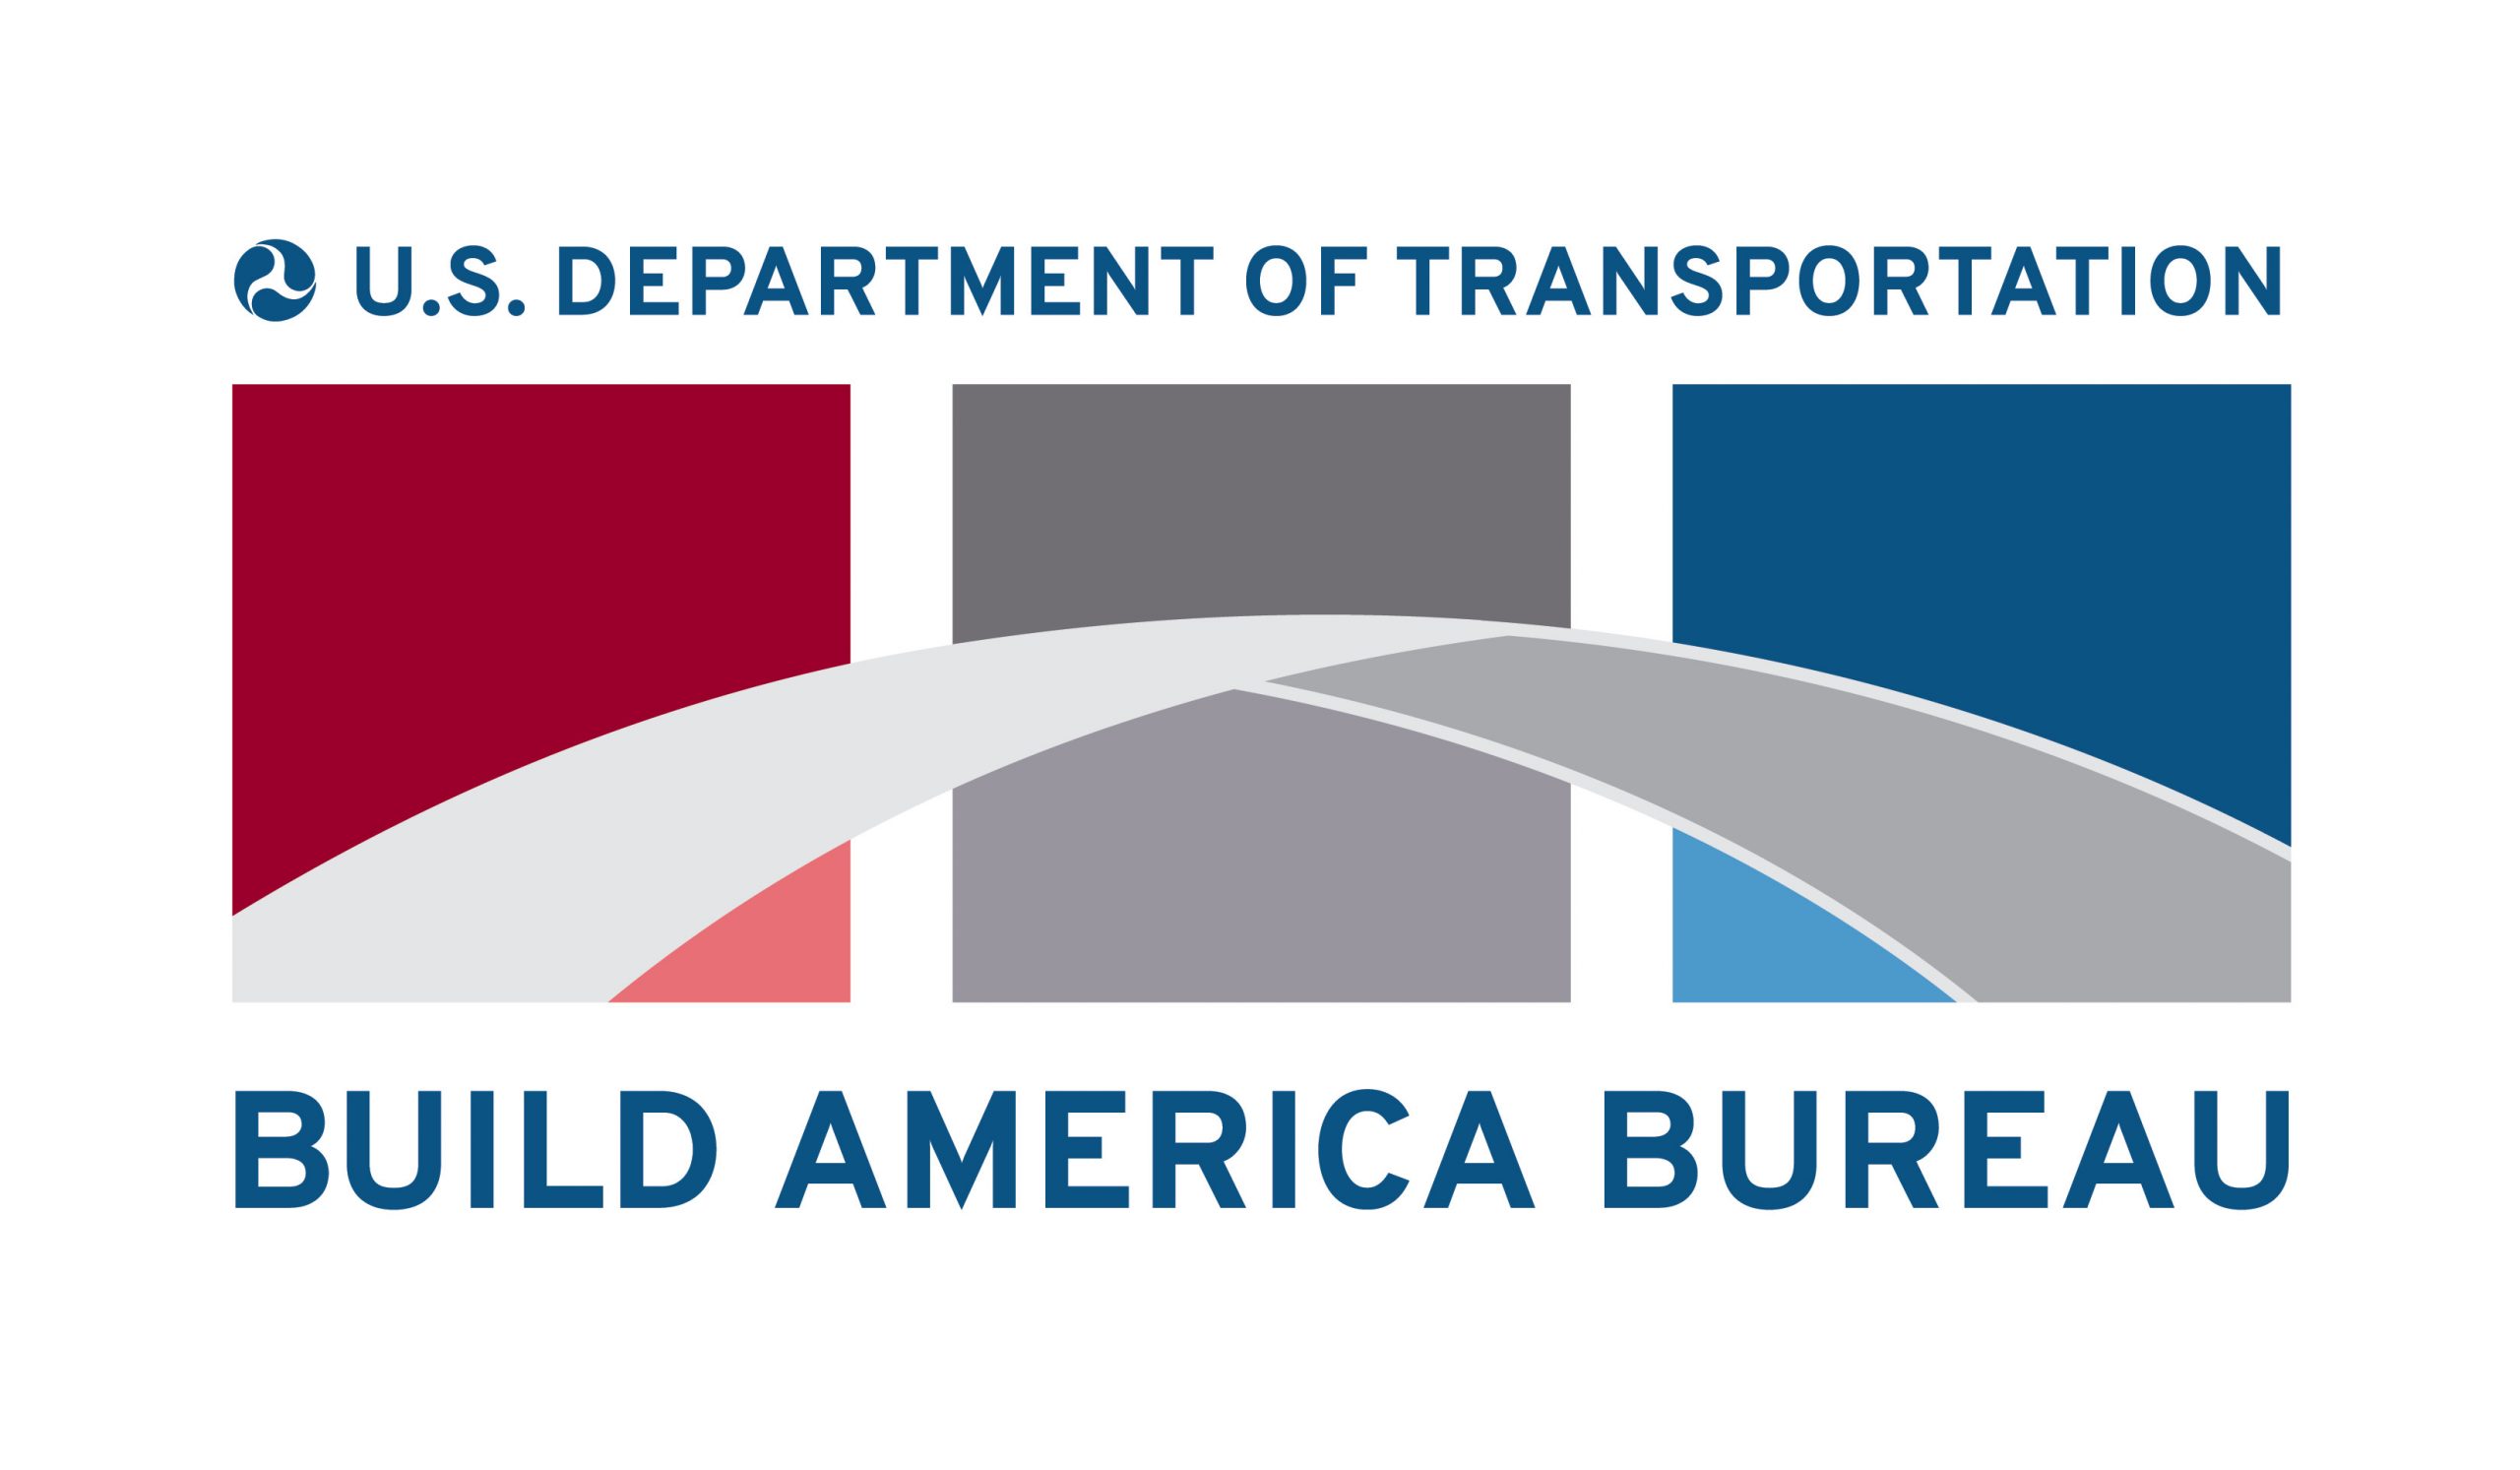 U.S. Department of Transportation, Build America Bureau